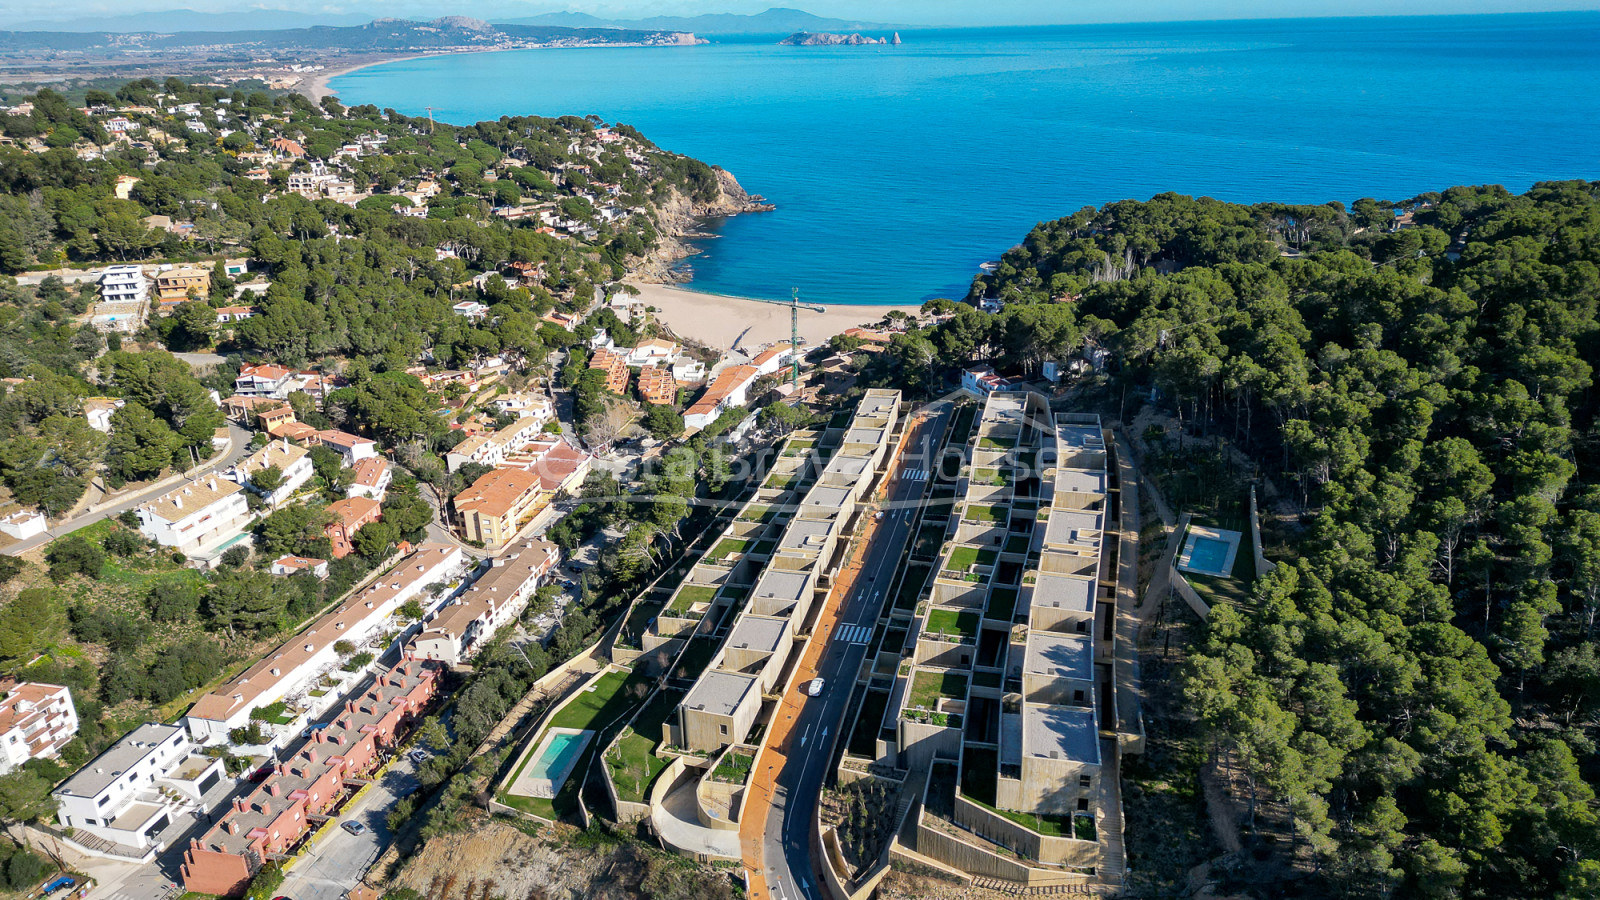 Apartament d'obra nova amb vistes al mar en venda a Sa Riera (Begur)